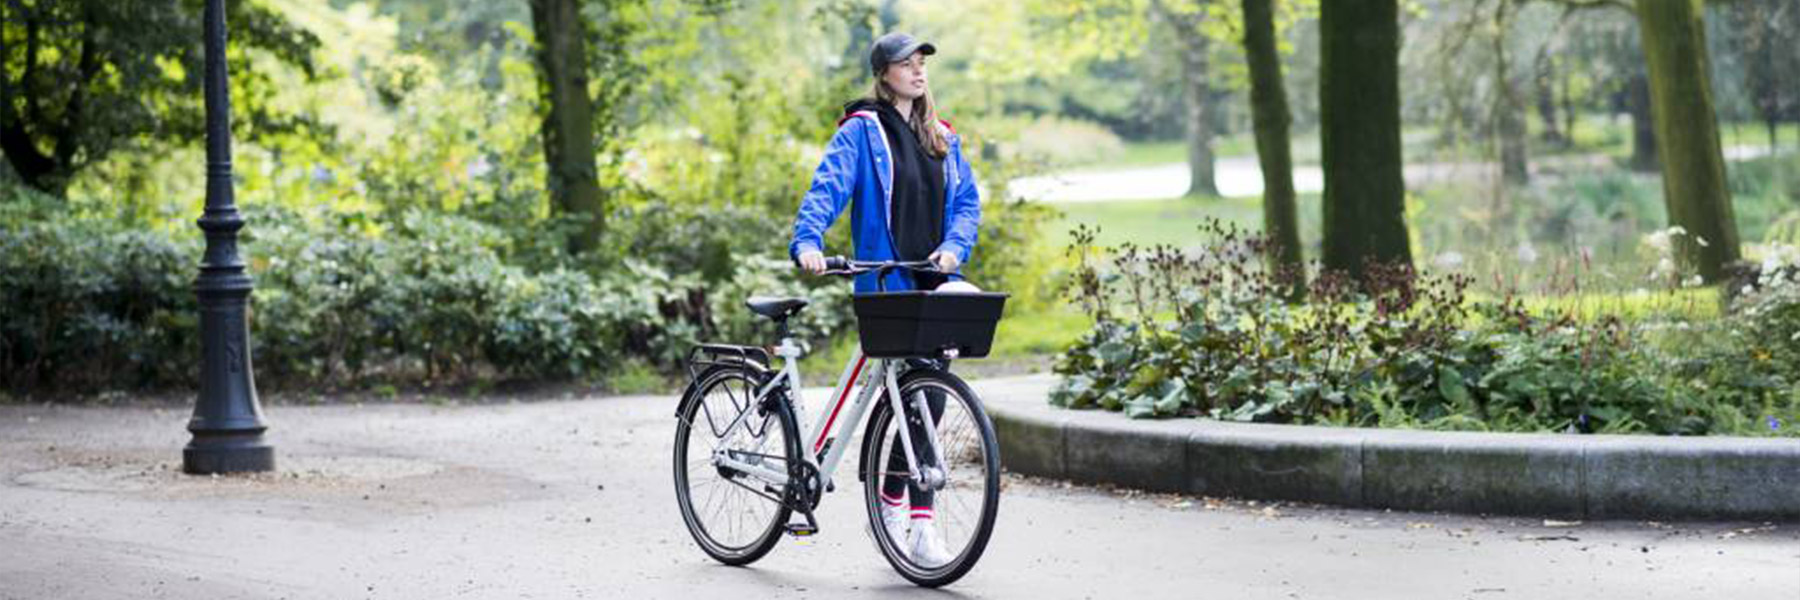 Meisje in park met union fiets